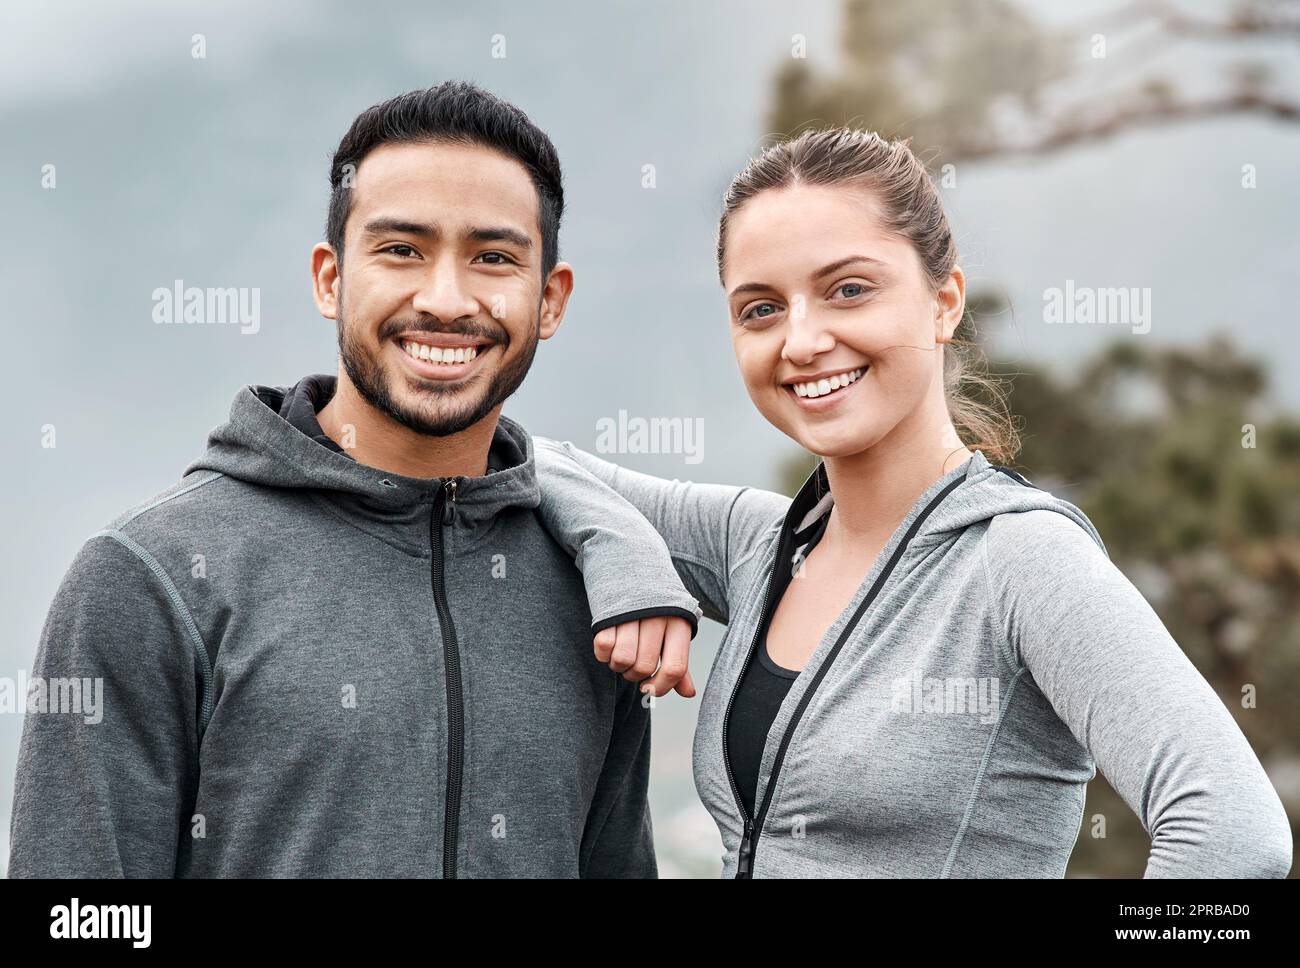 Wir fahren regelmäßig gemeinsam auf die Trails. Porträt eines sportlichen jungen Mannes und einer jungen Frau, die im Freien trainieren. Stockfoto